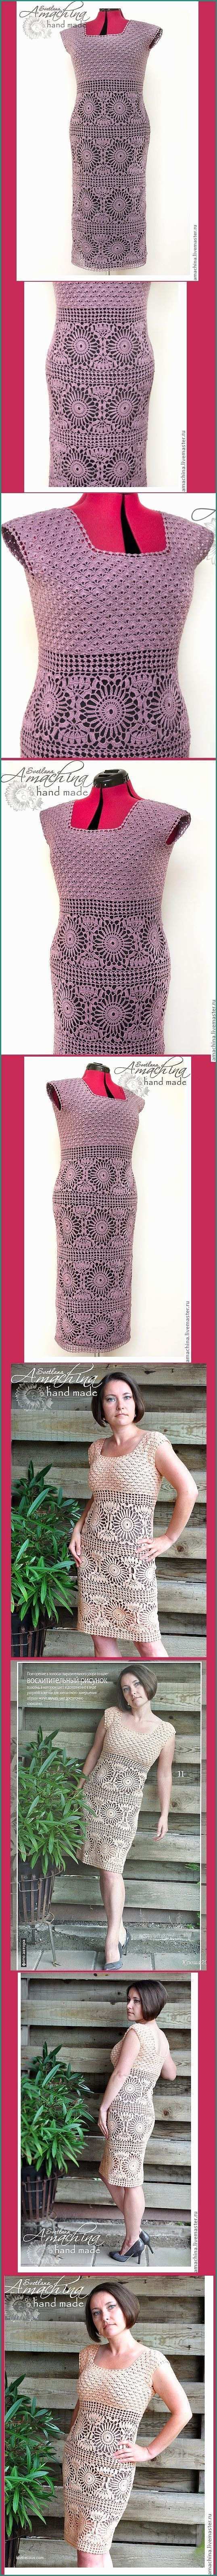 Cappellini Uncinetto Bomboniere E 17 Fantastiche Immagini In Vestitini Crochet Su Pinterest